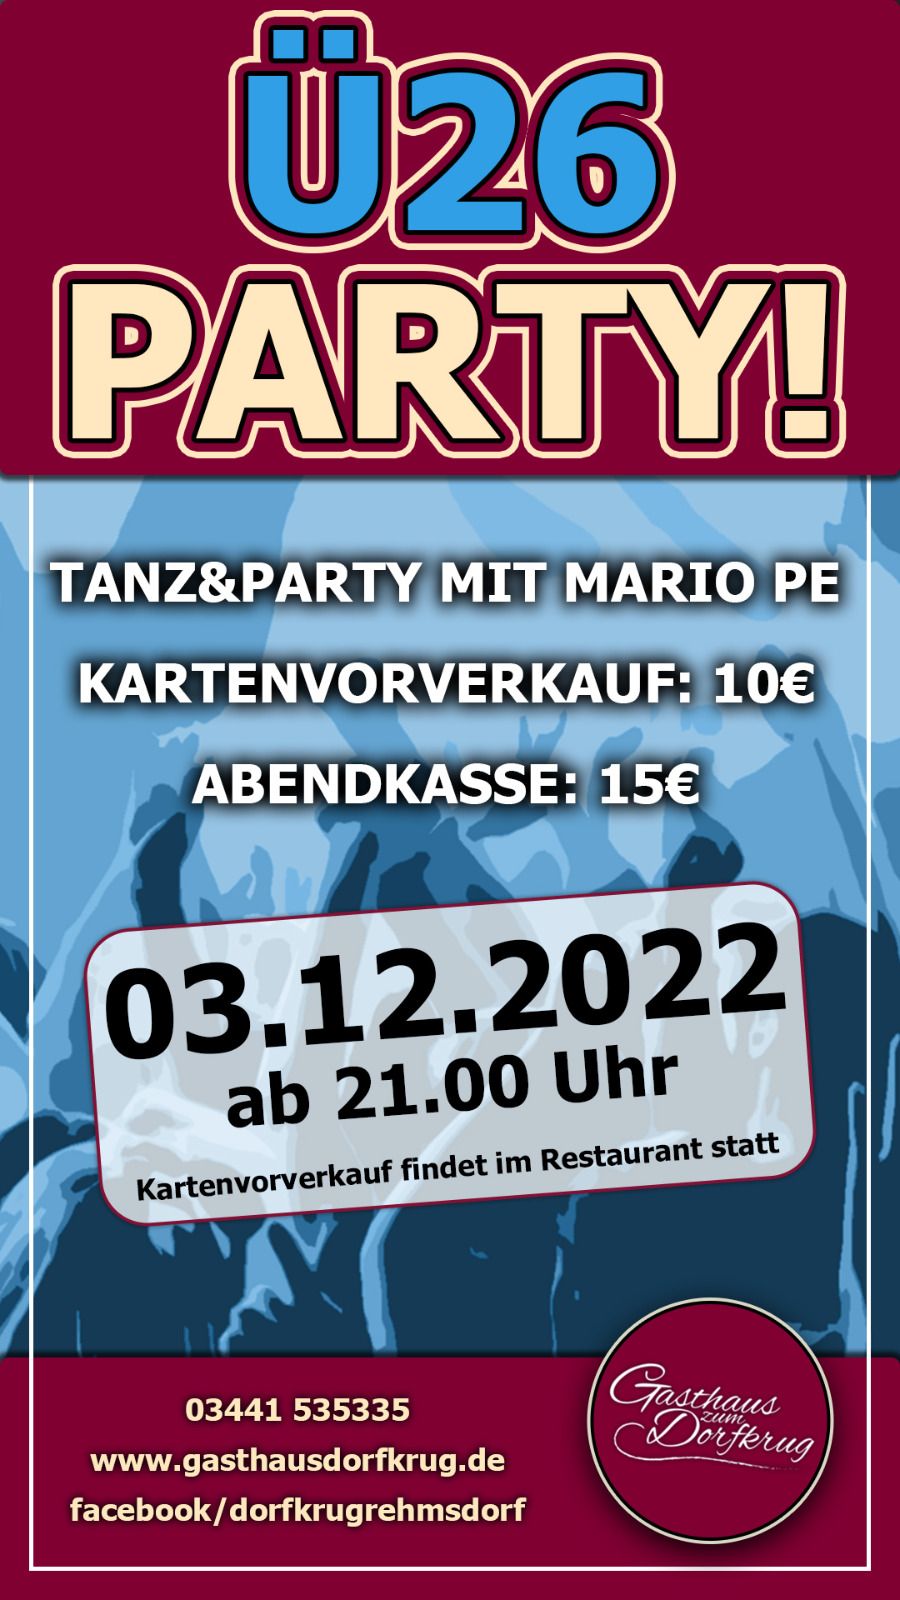 Ü26 Party am 3.12.2022 im Gasthaus Dorfkrug Rehmsdorf